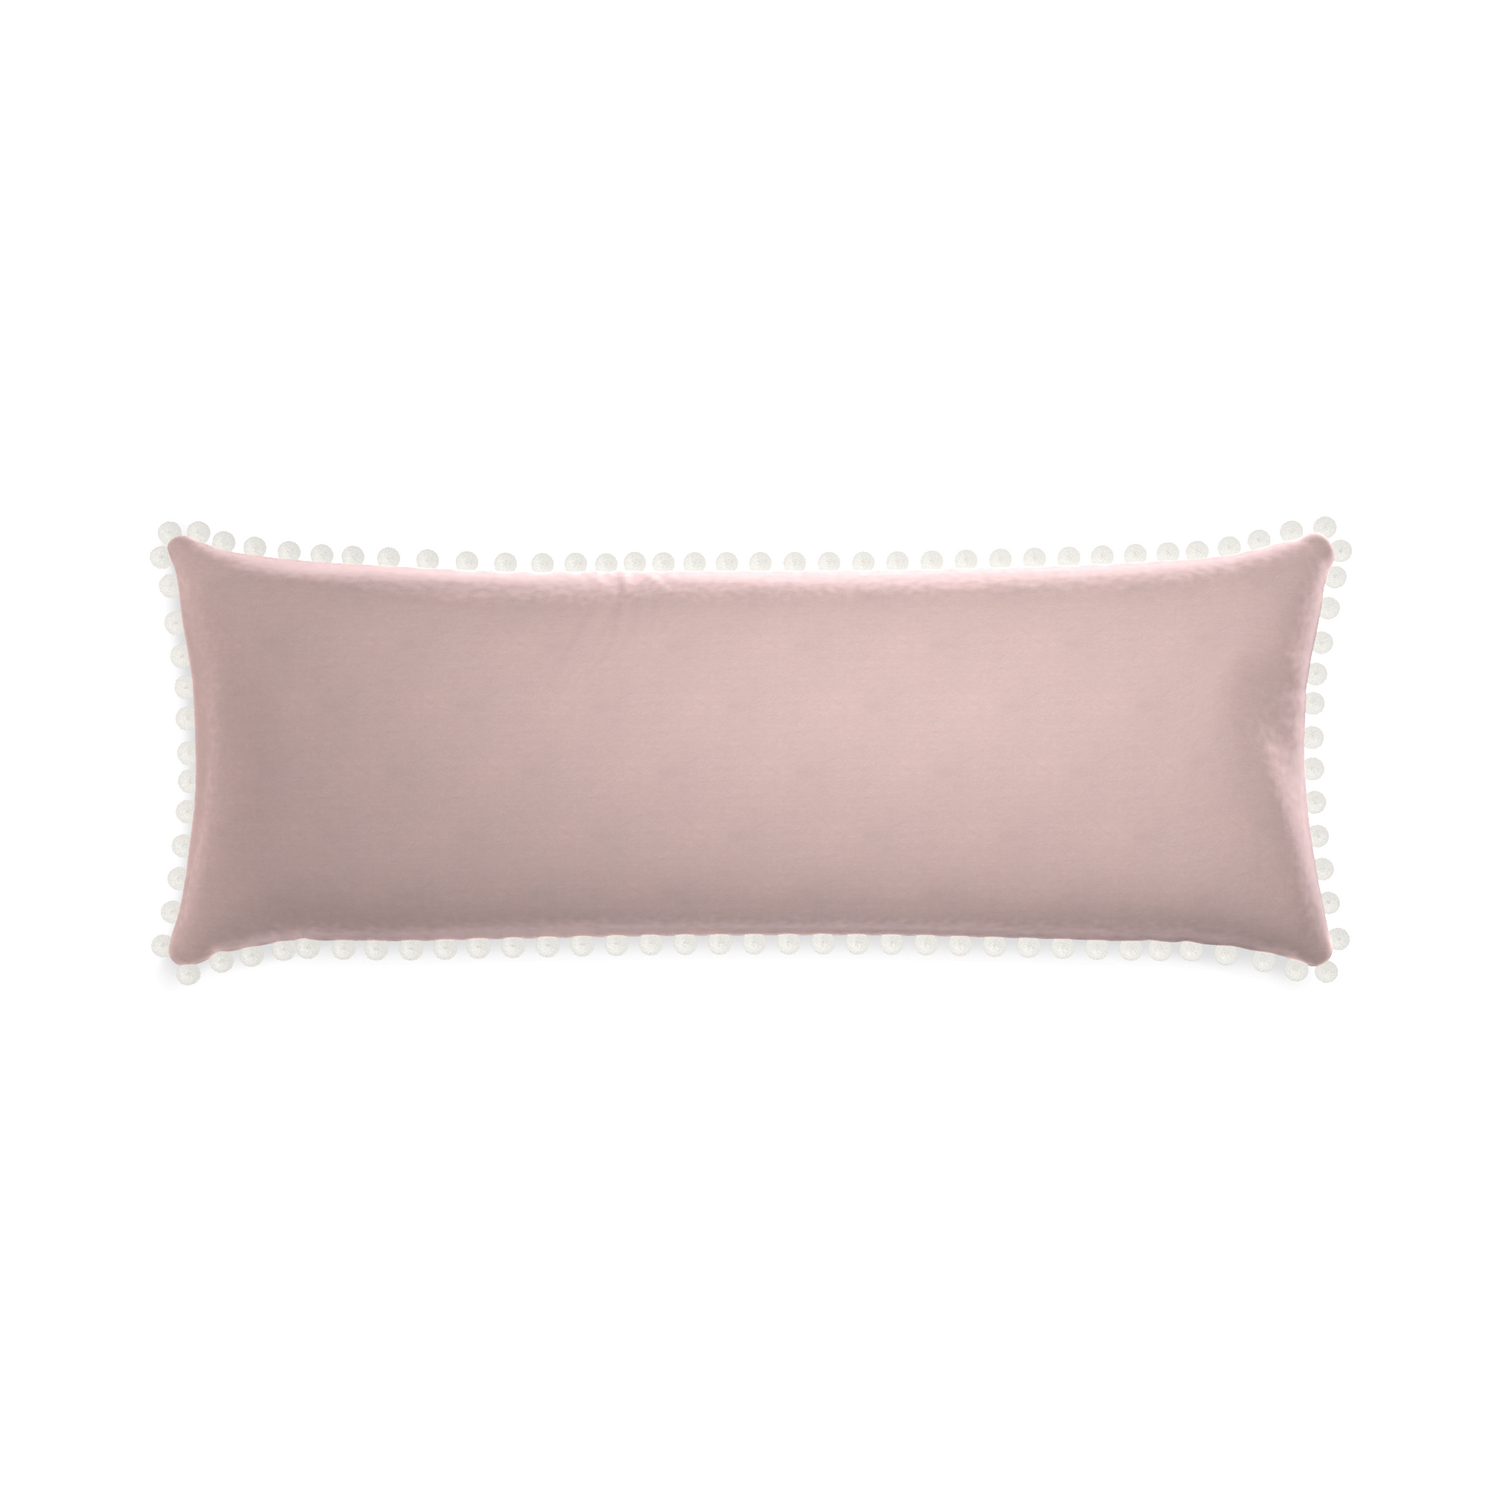 Xl-lumbar rose velvet custom pillow with snow pom pom on white background